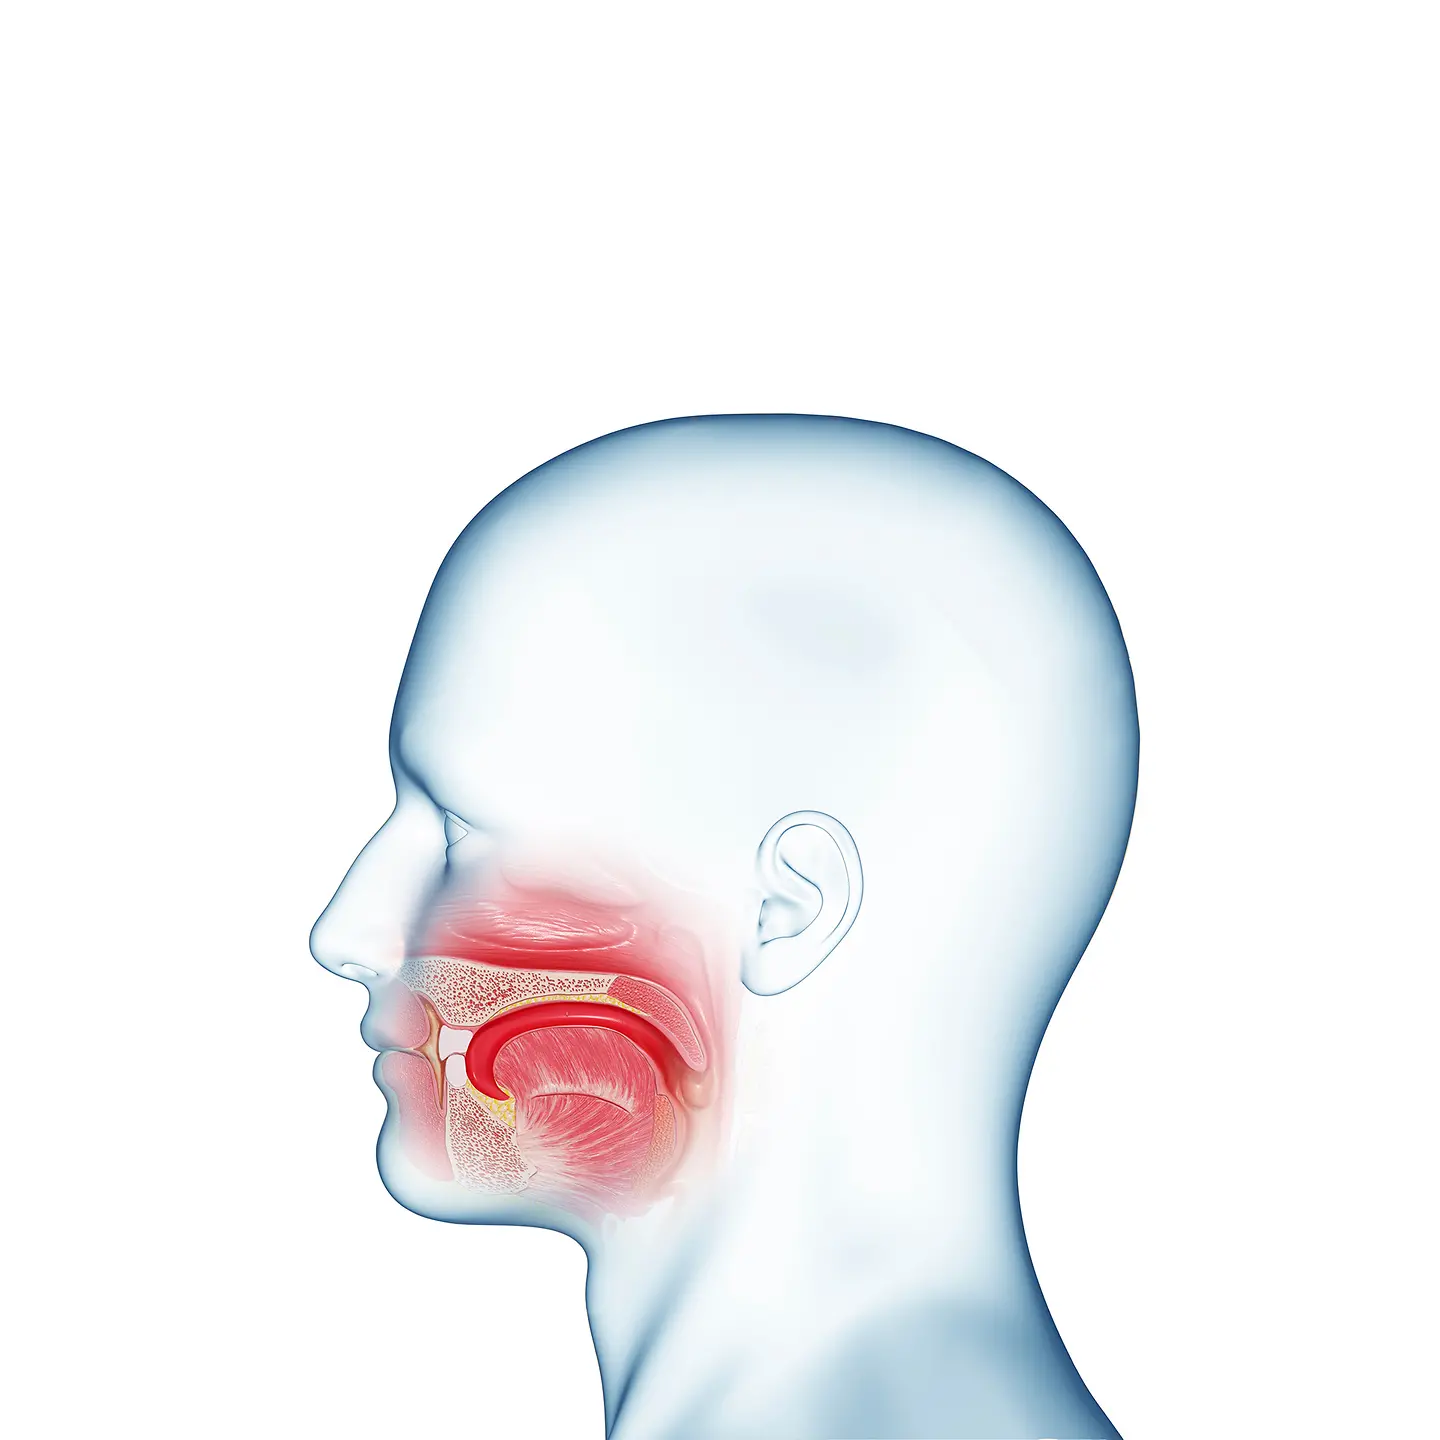 Abbildung der Anatomie einer Mundhöhle